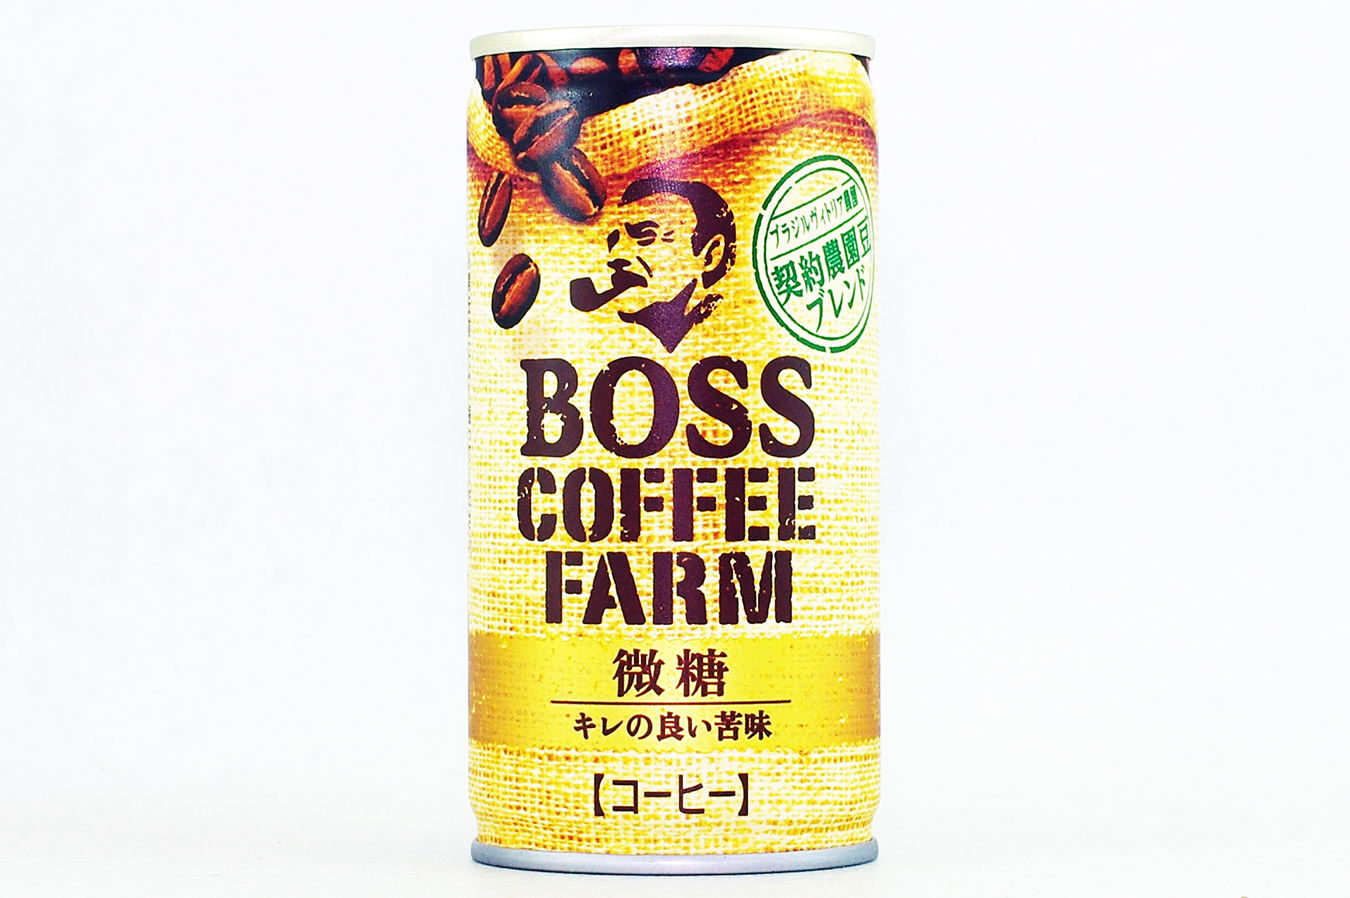 BOSS COFFEE FARM 微糖 2018年10月